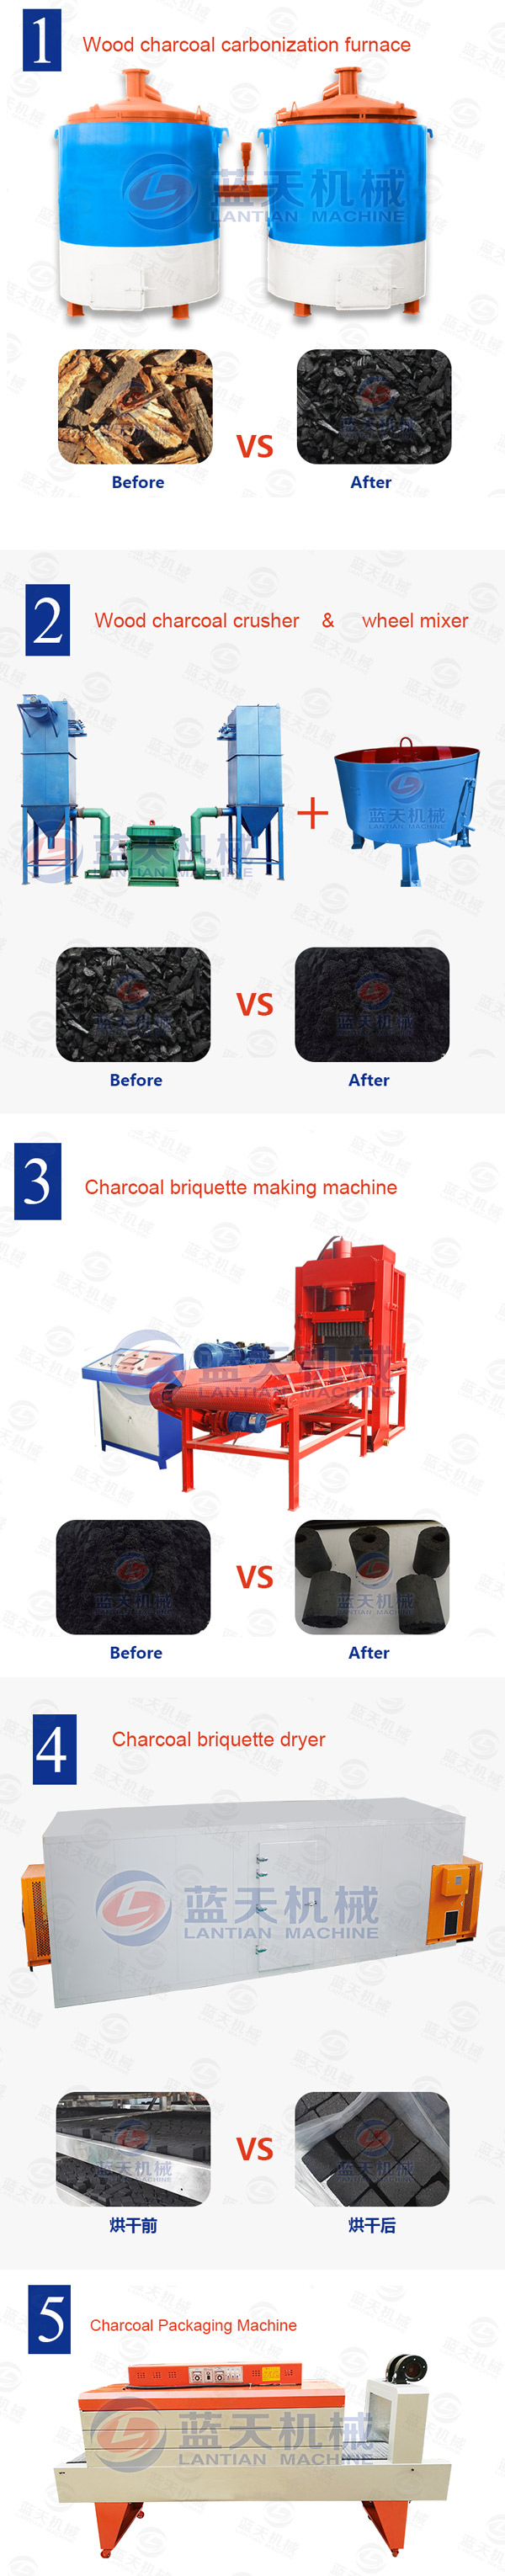 charcoal briquette machine